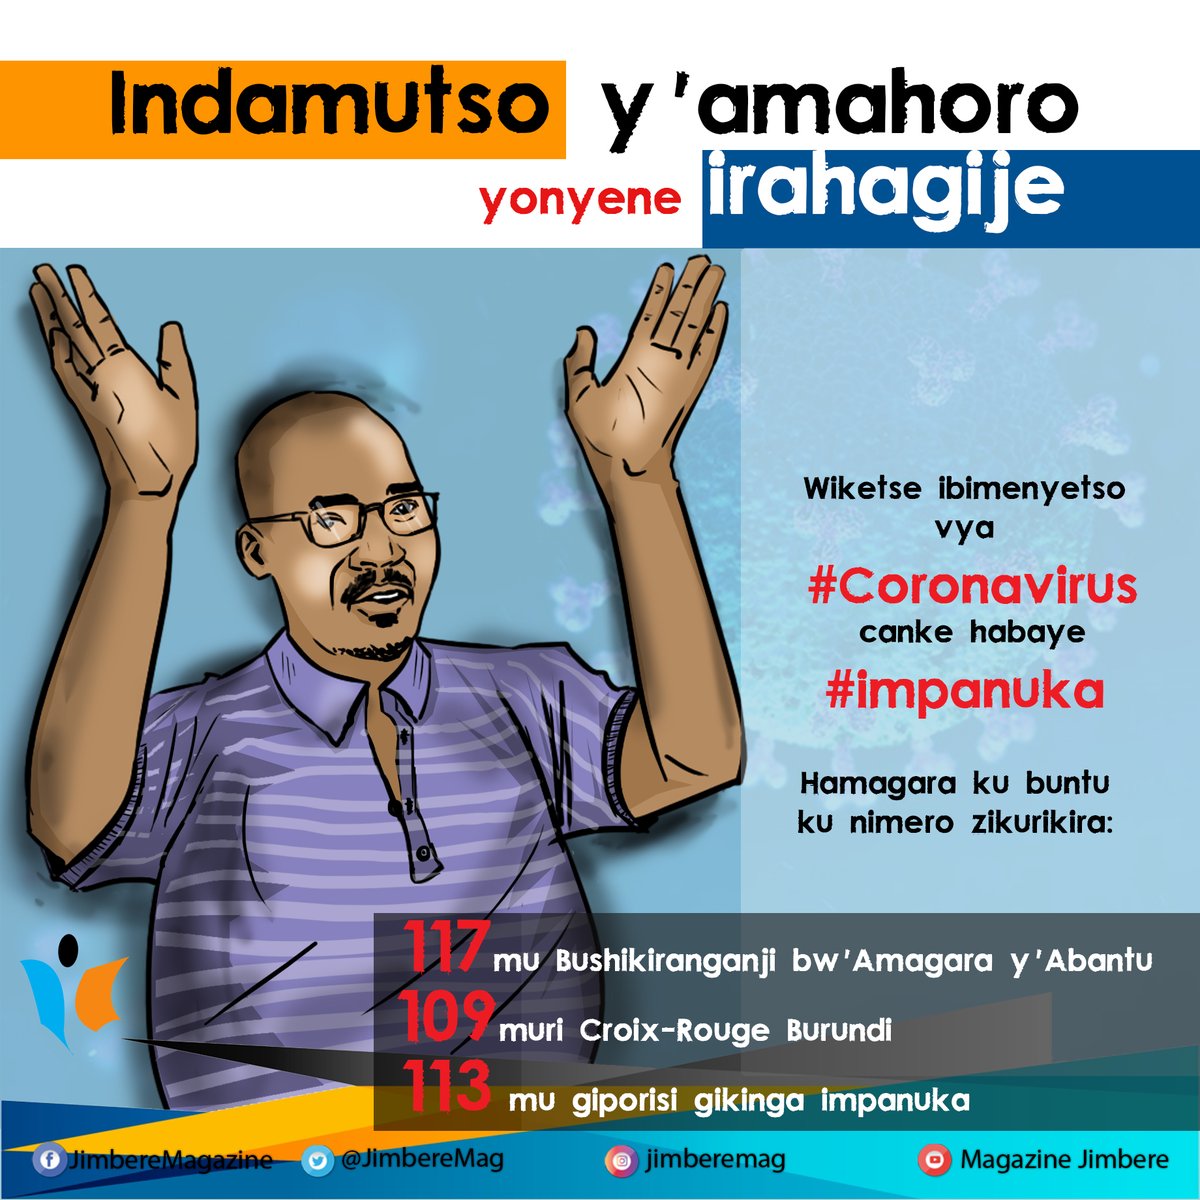  Prévention de la propagation du  #coronavirus au  #Burundi: apprenons à ne plus nous serrer (parfois longuement) la main En cas de soupçon de symptômes du  #COVIDー19, ne nous ruons pas à l’hôpital, pour éviter de contaminer d'autres sur le chemin. Appelons les numéros verts